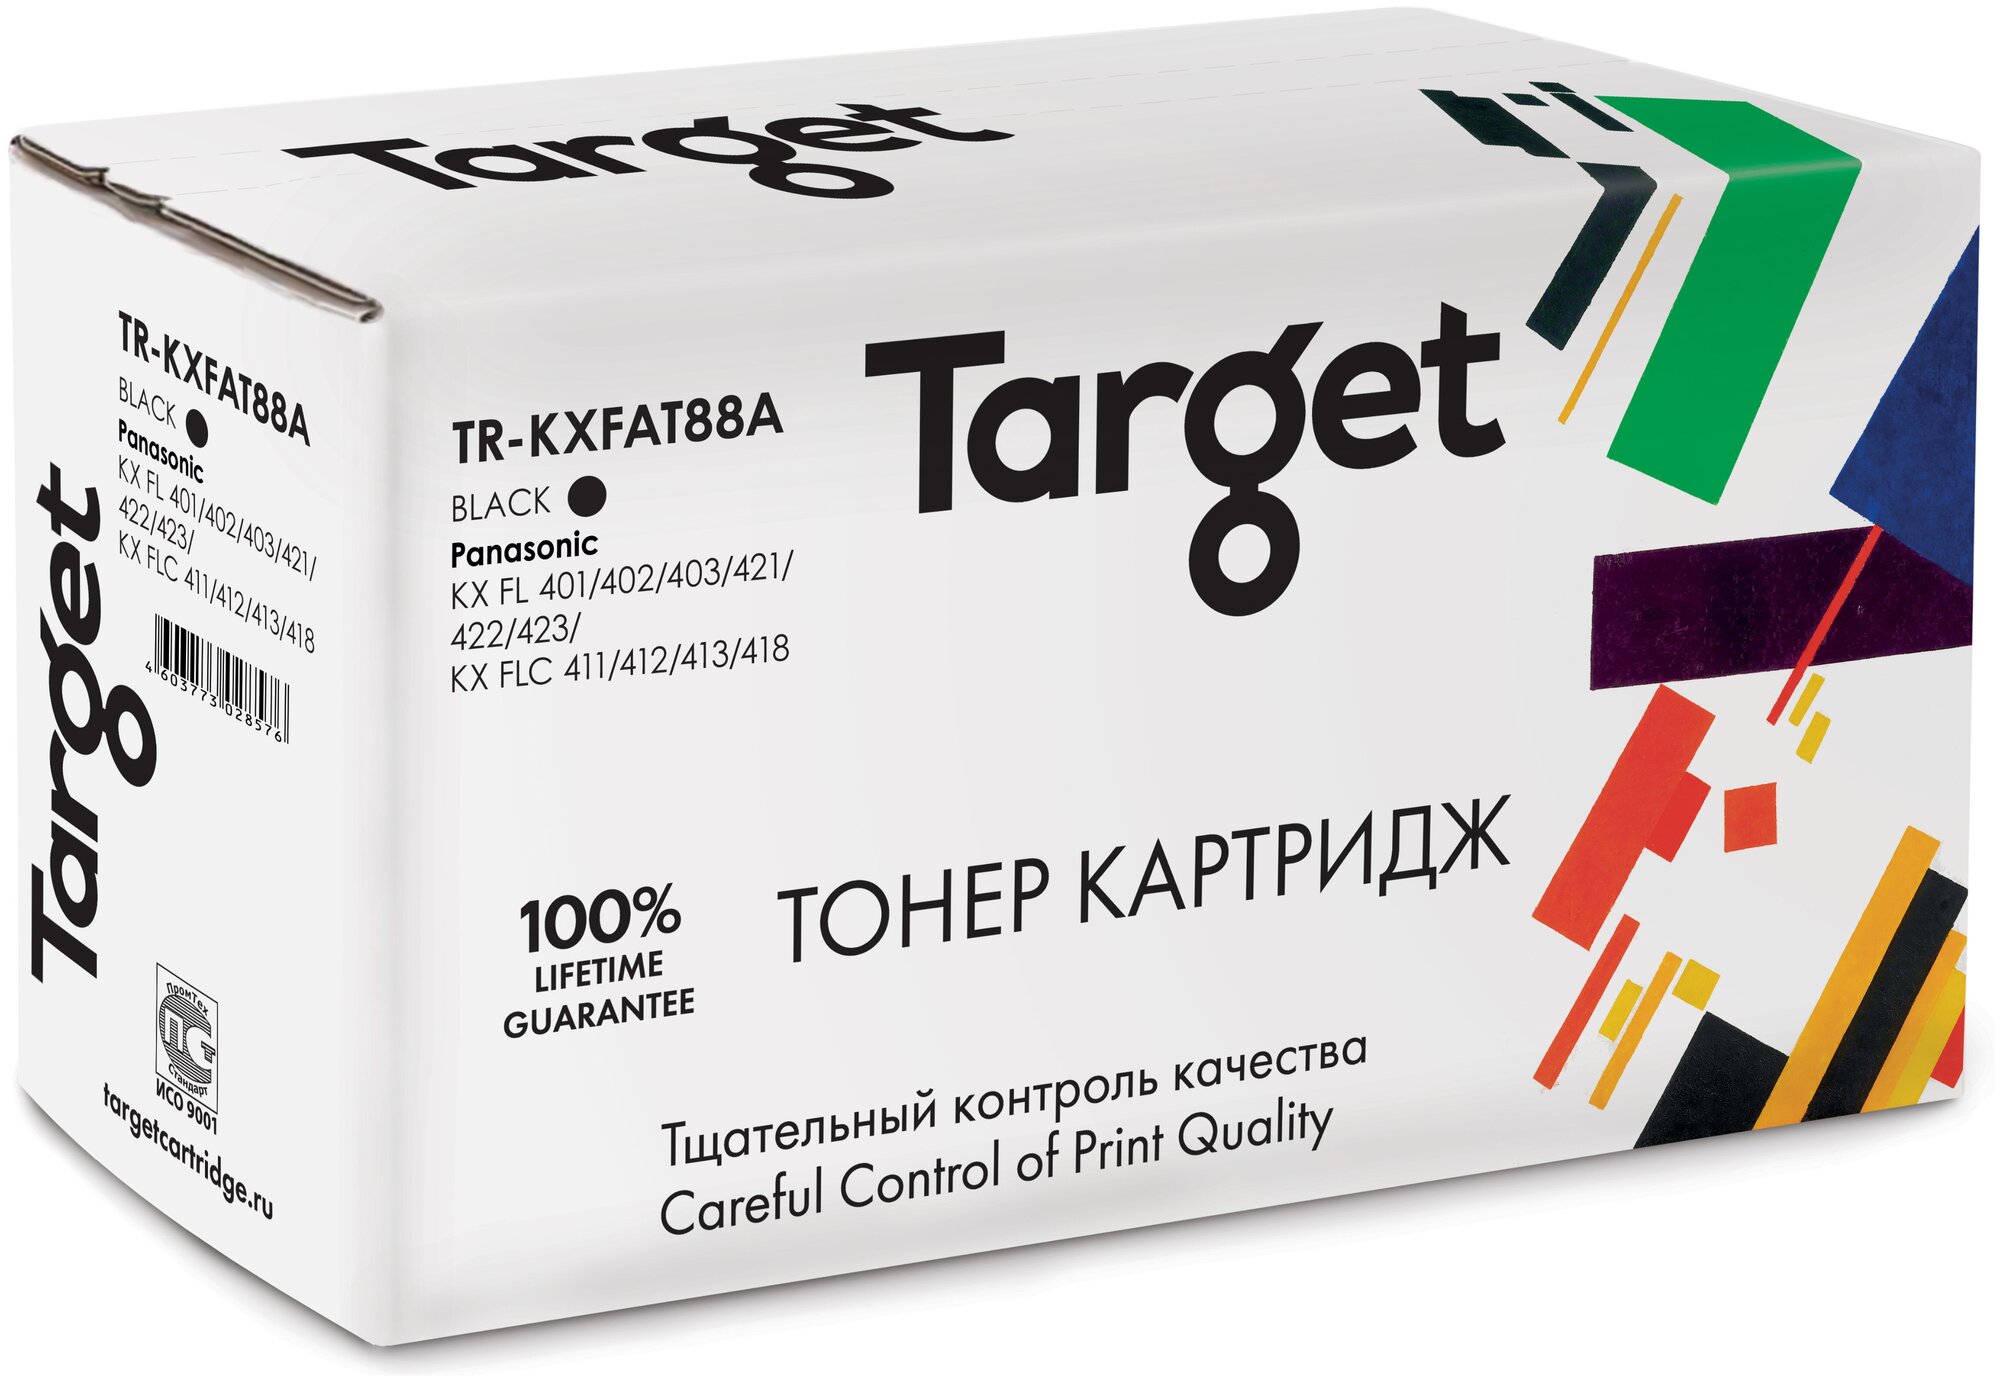 Тонер-картридж Target KXFAT88A, черный, для лазерного принтера, совместимый